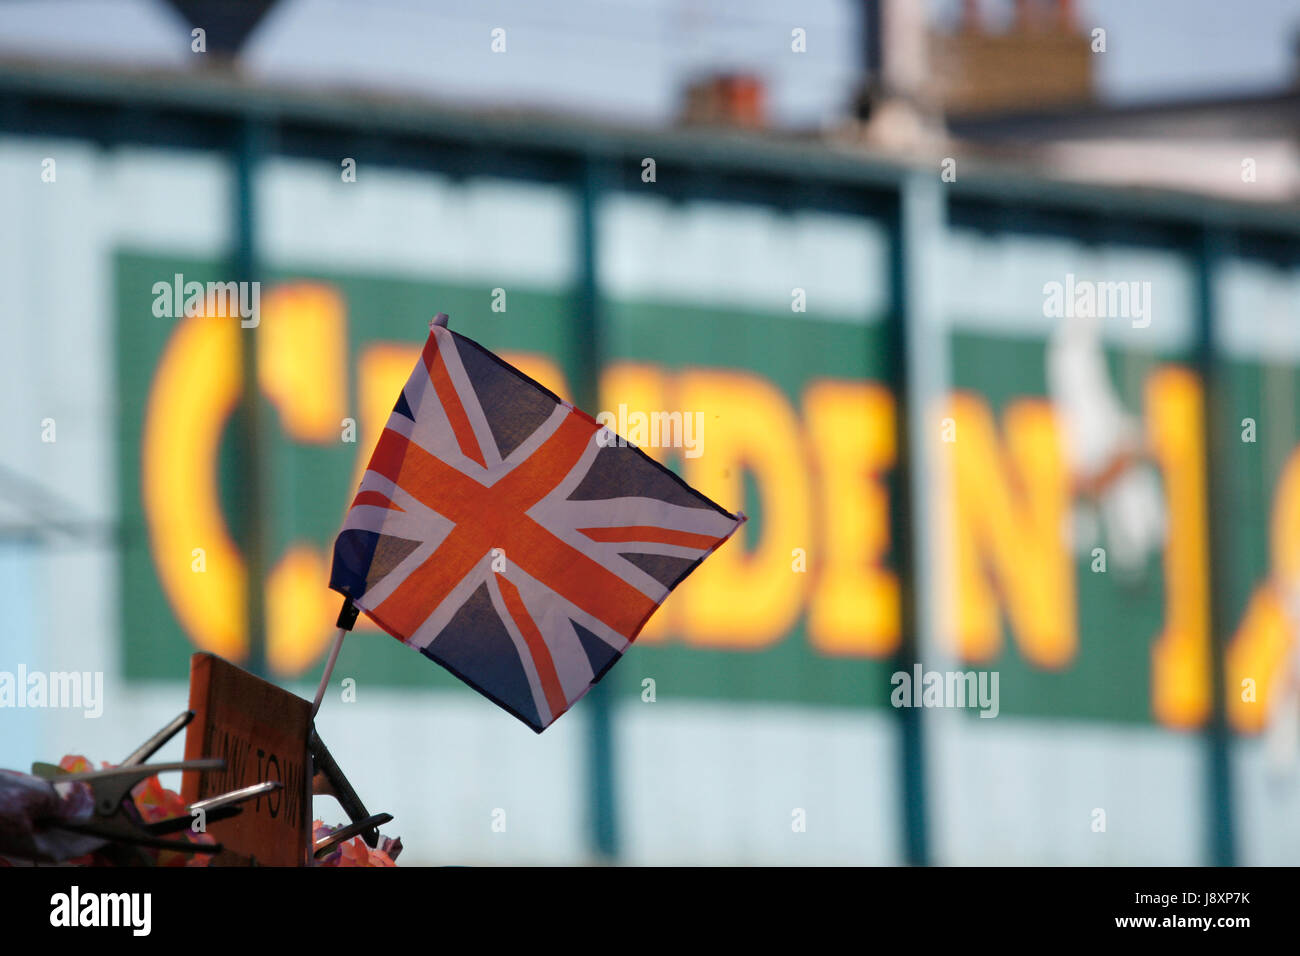 Camden Lock segno e Union Jack Flag visto dalla distanza Foto Stock